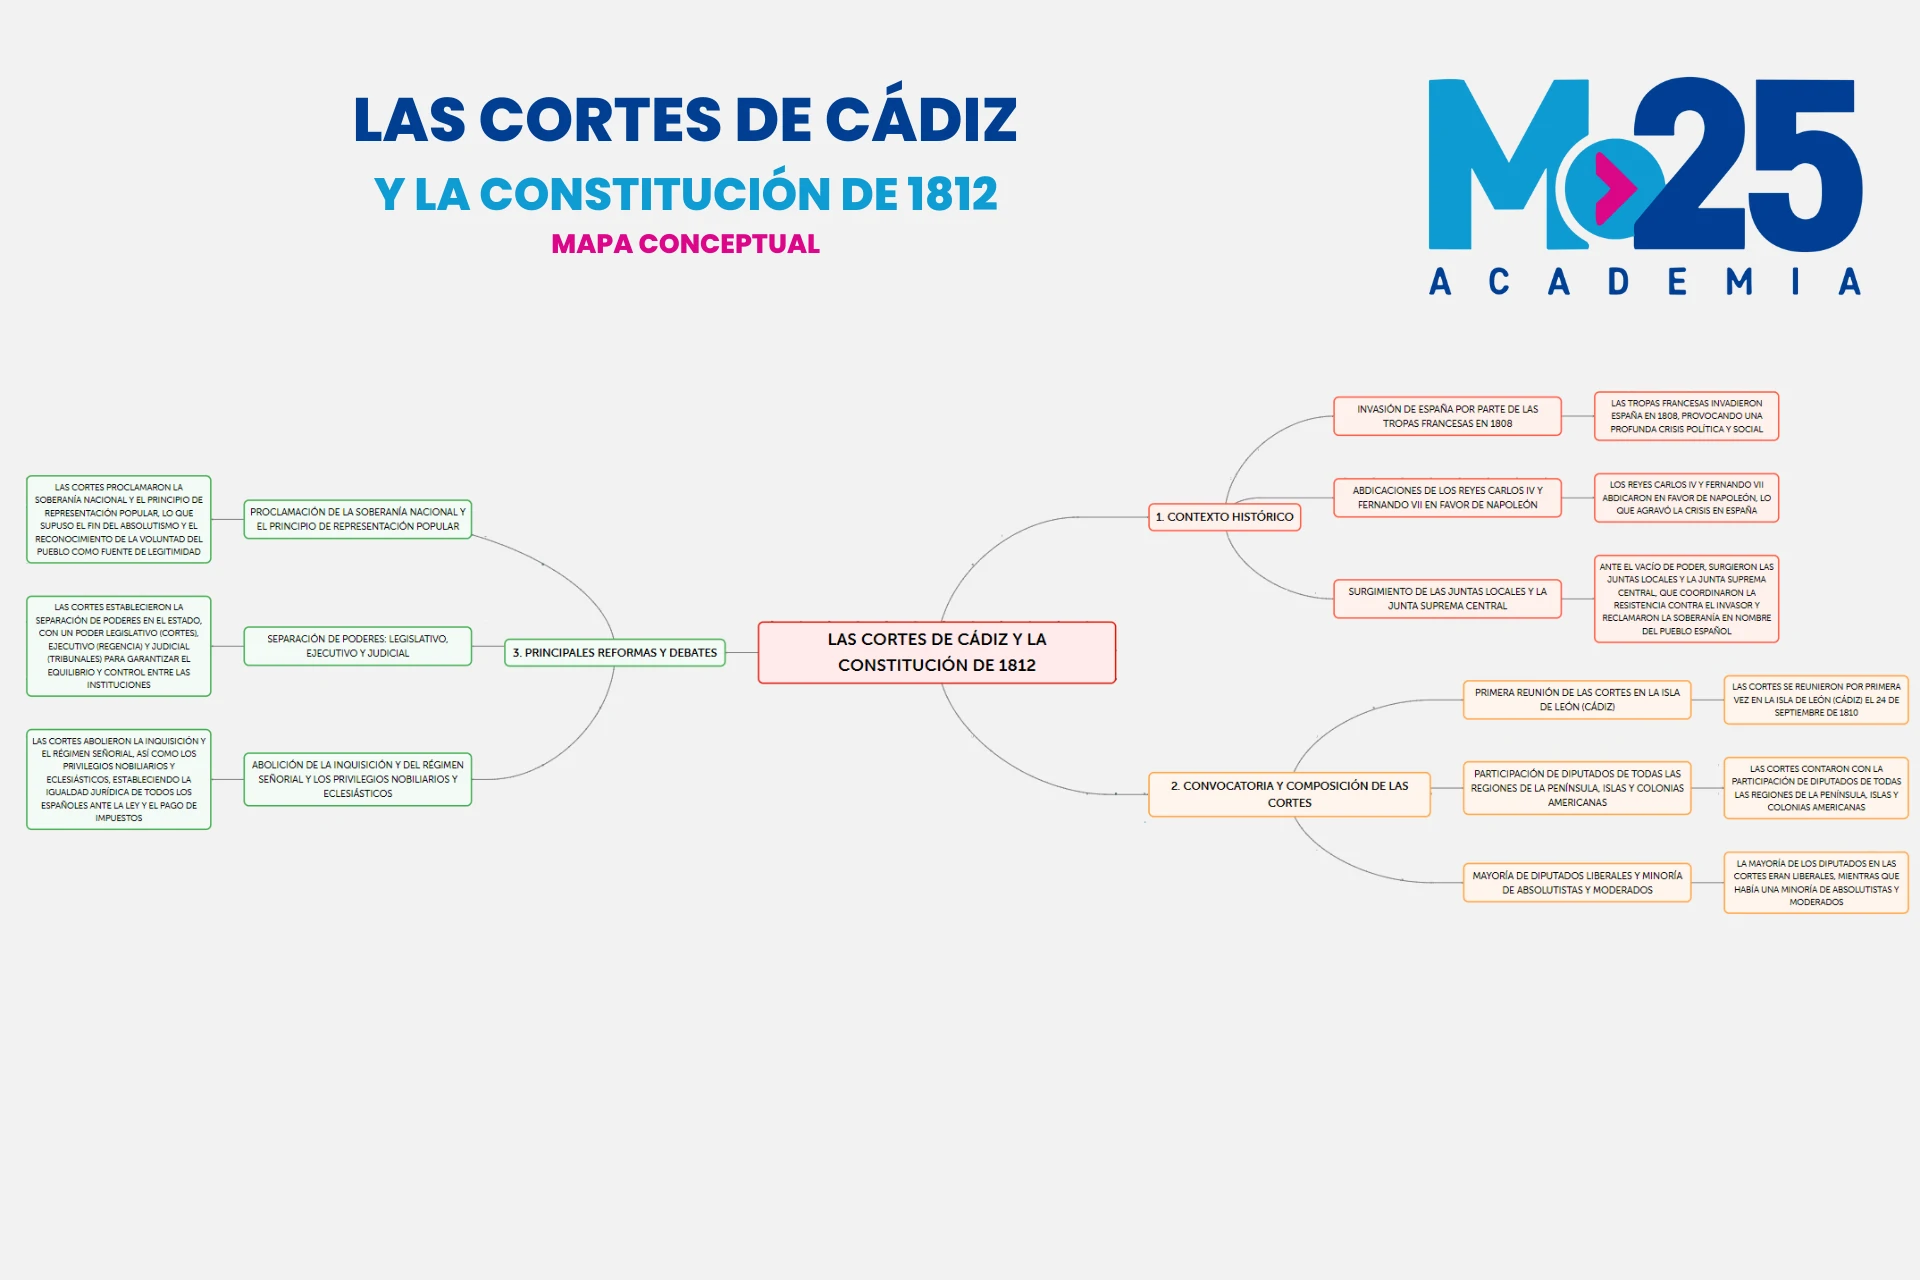 Las Cortes de Cádiz mapa conceptual